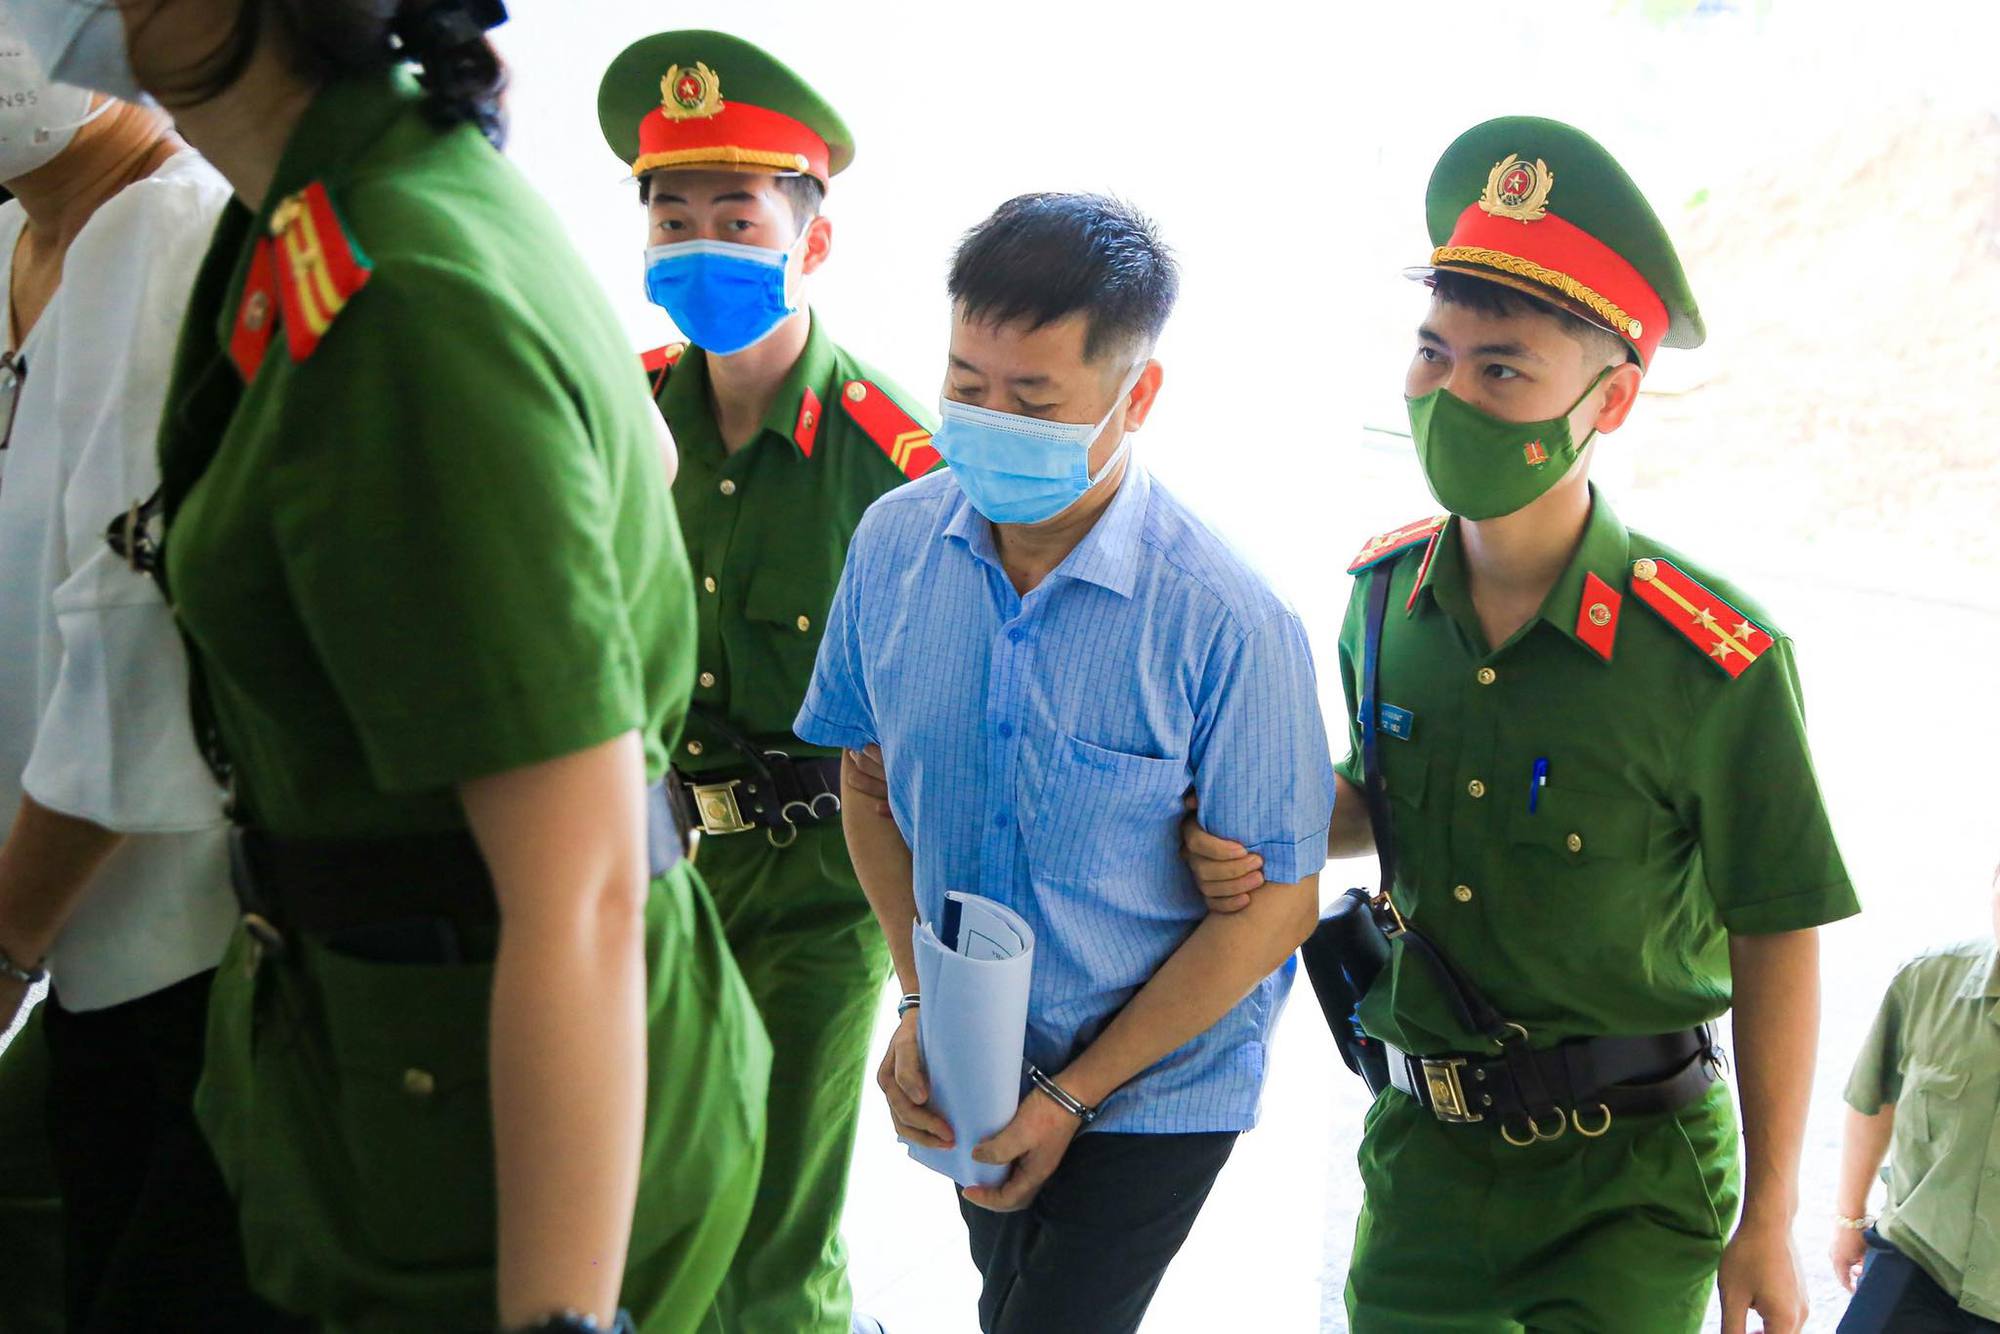 Cựu bí thư Bình Dương Trần Văn Nam cùng các đồng phạm bị dẫn giải tới tòa - Ảnh 8.